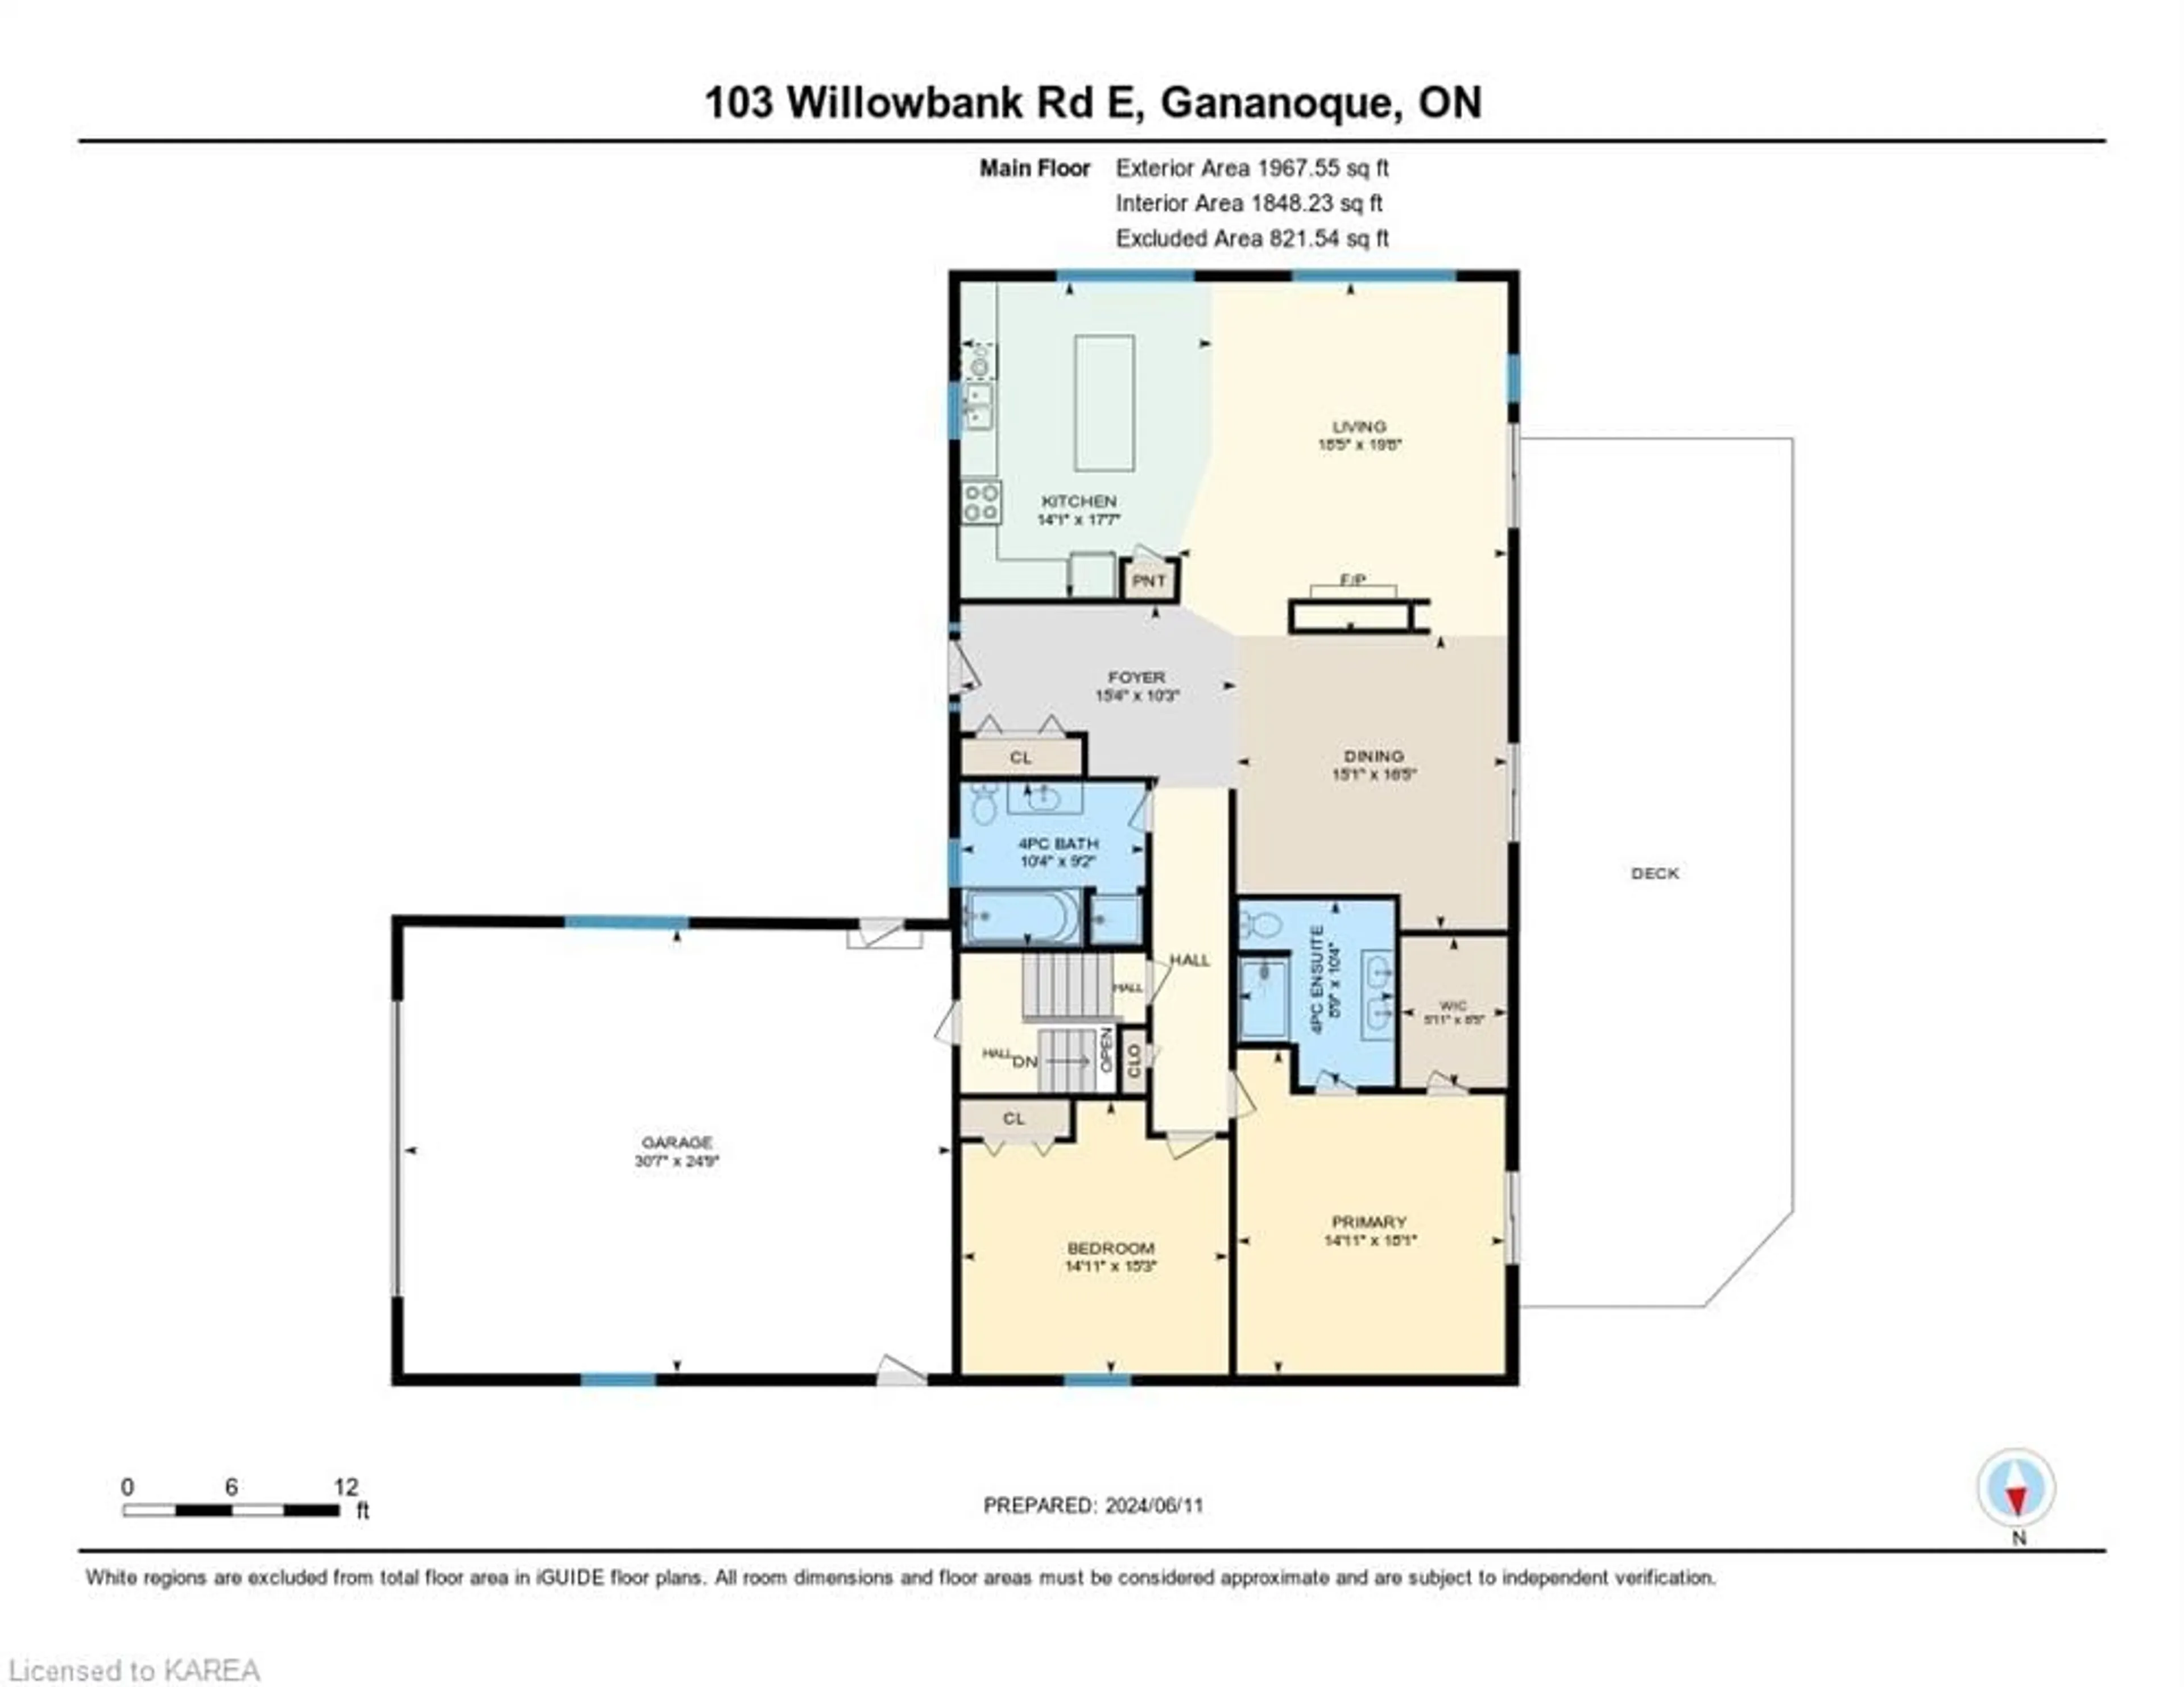 Floor plan for 103 Willowbank Rd, Gananoque Ontario K7G 2V5